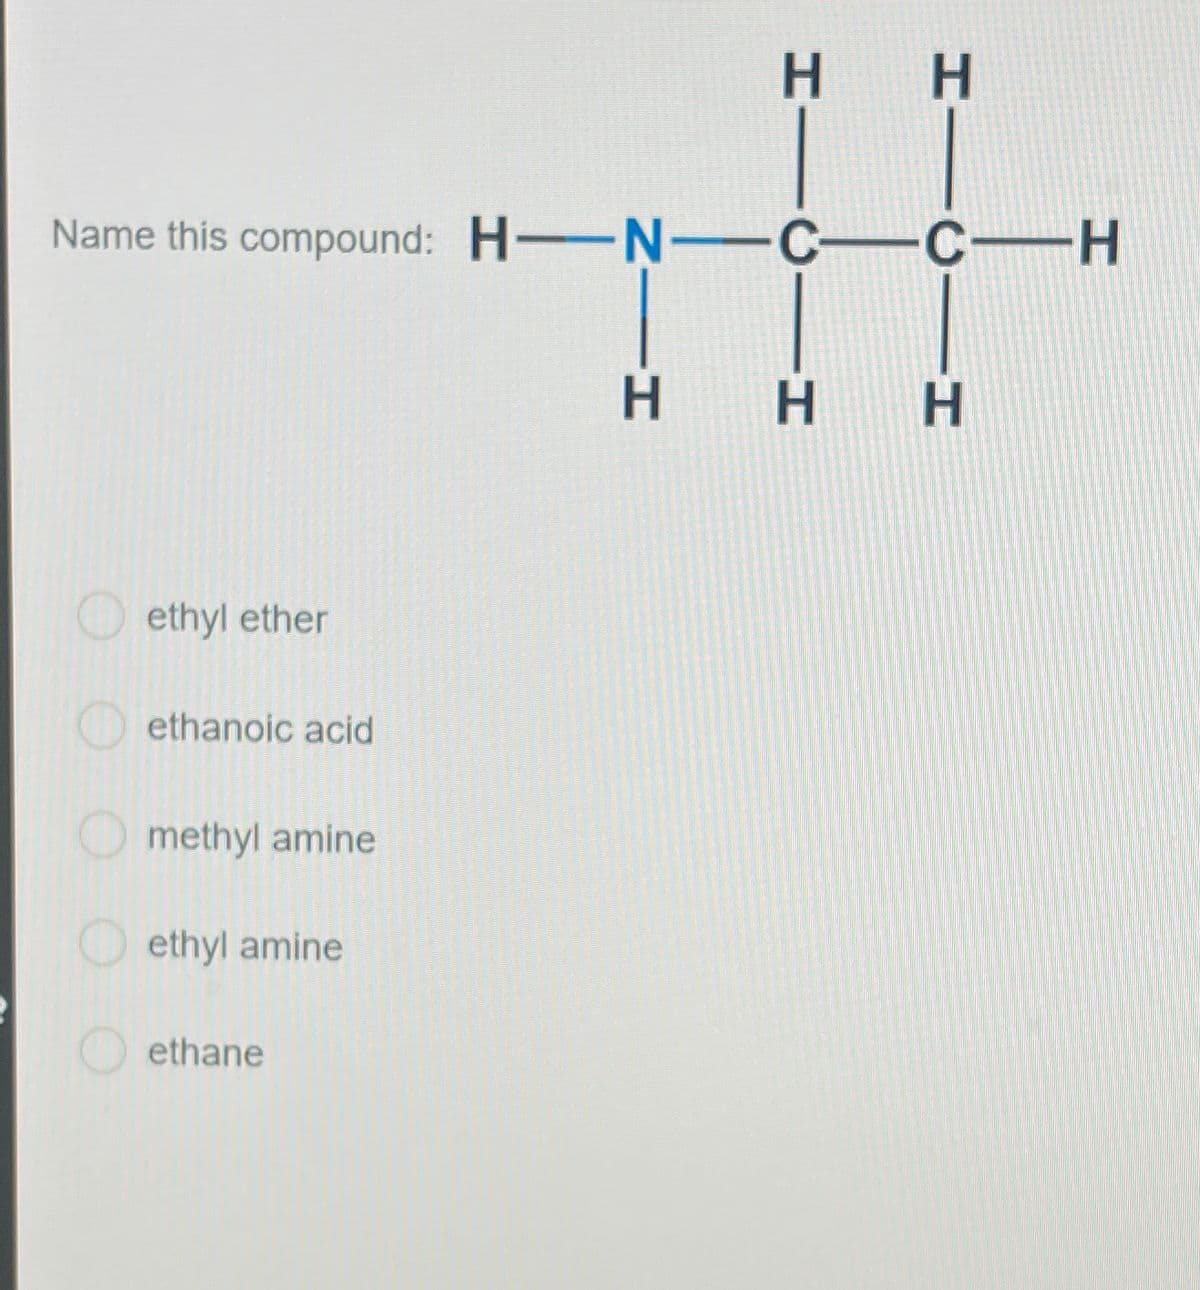 Name this compound: H-N-C—C—H
ethyl ether
ethanoic acid
methyl amine
ethyl amine
H H
ethane
H H H